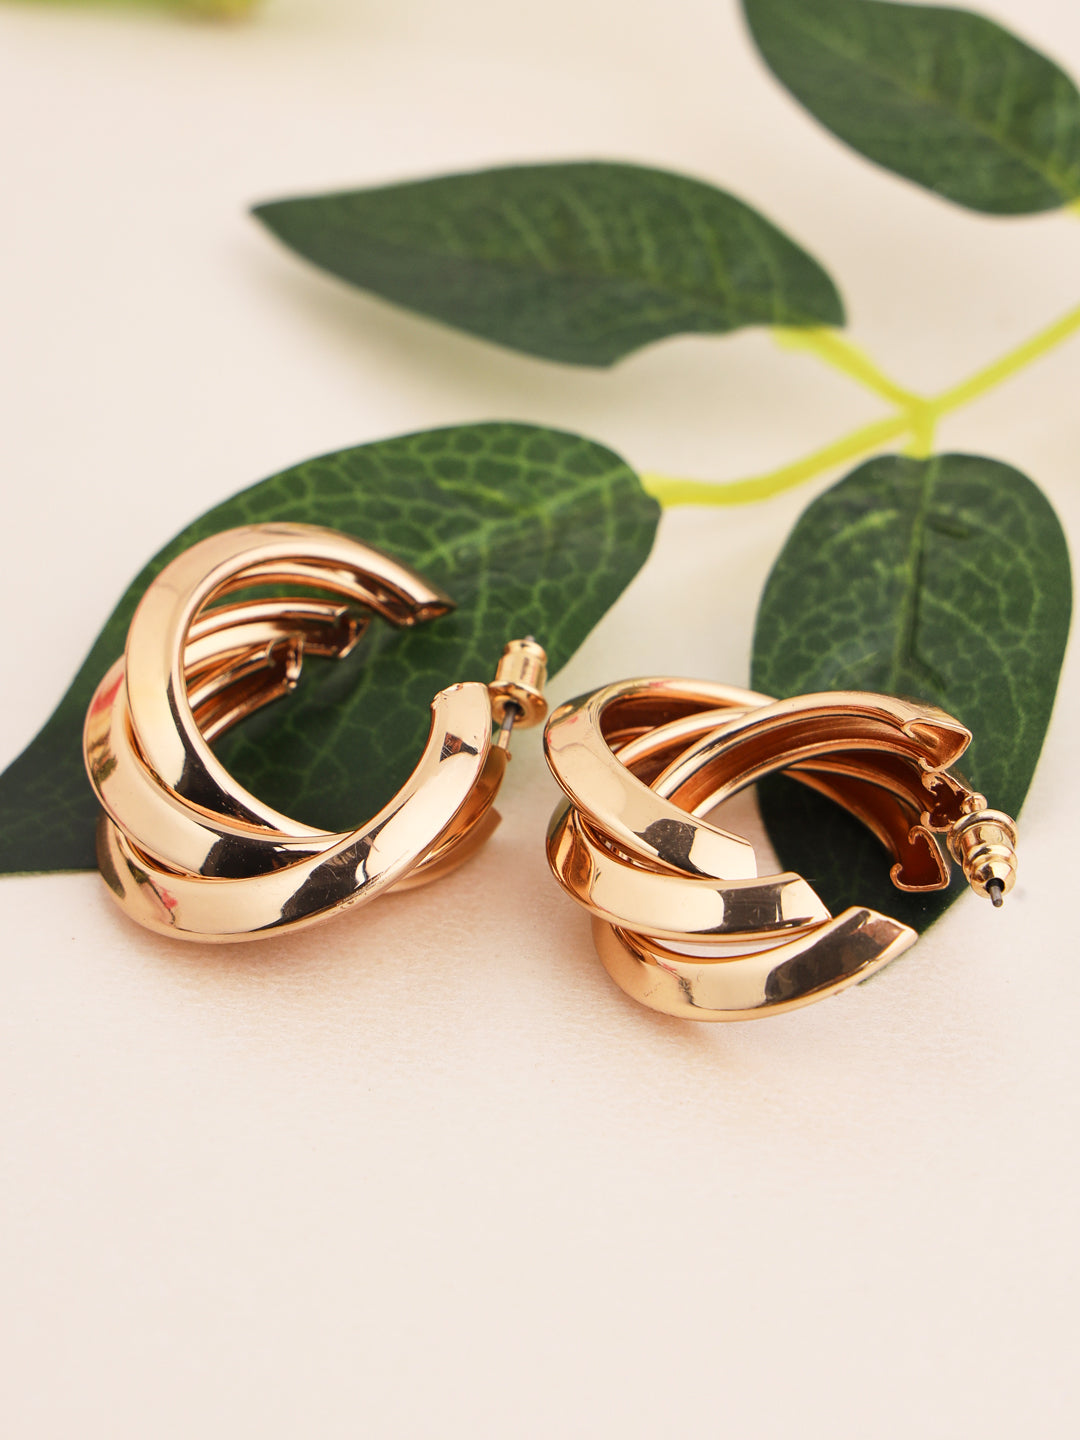 Prita by Priyaasi Golden Twisted Ring Gold-Plated Half-Hoop Earrings